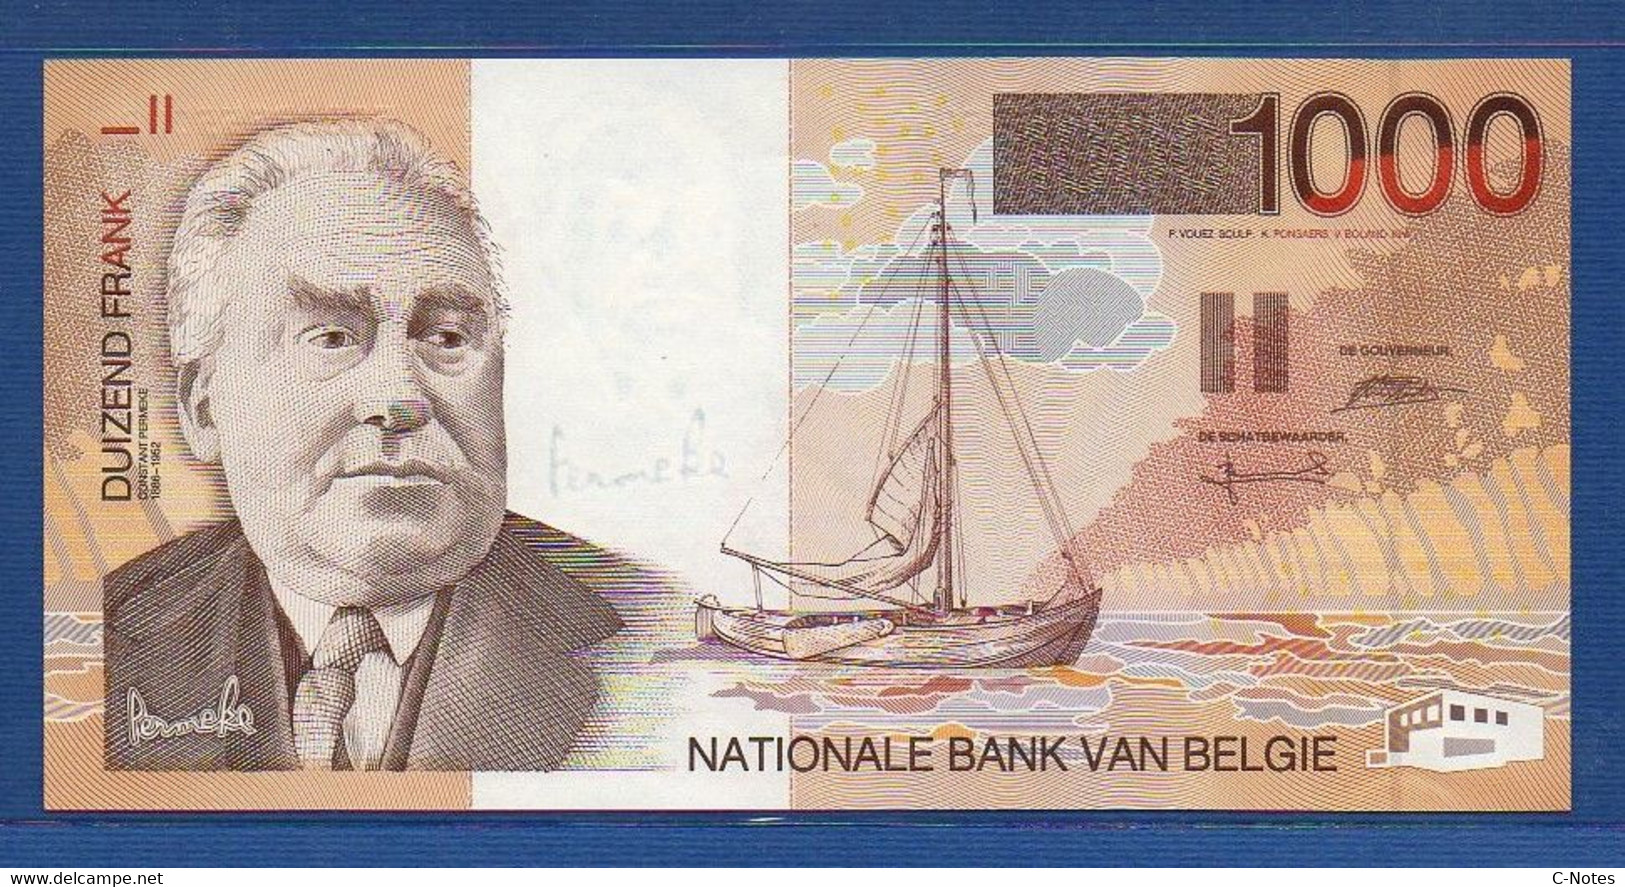 BELGIUM - P.150 - 1000 Francs ND (1997) UNC, Serie 50802655068 - 1000 Francos